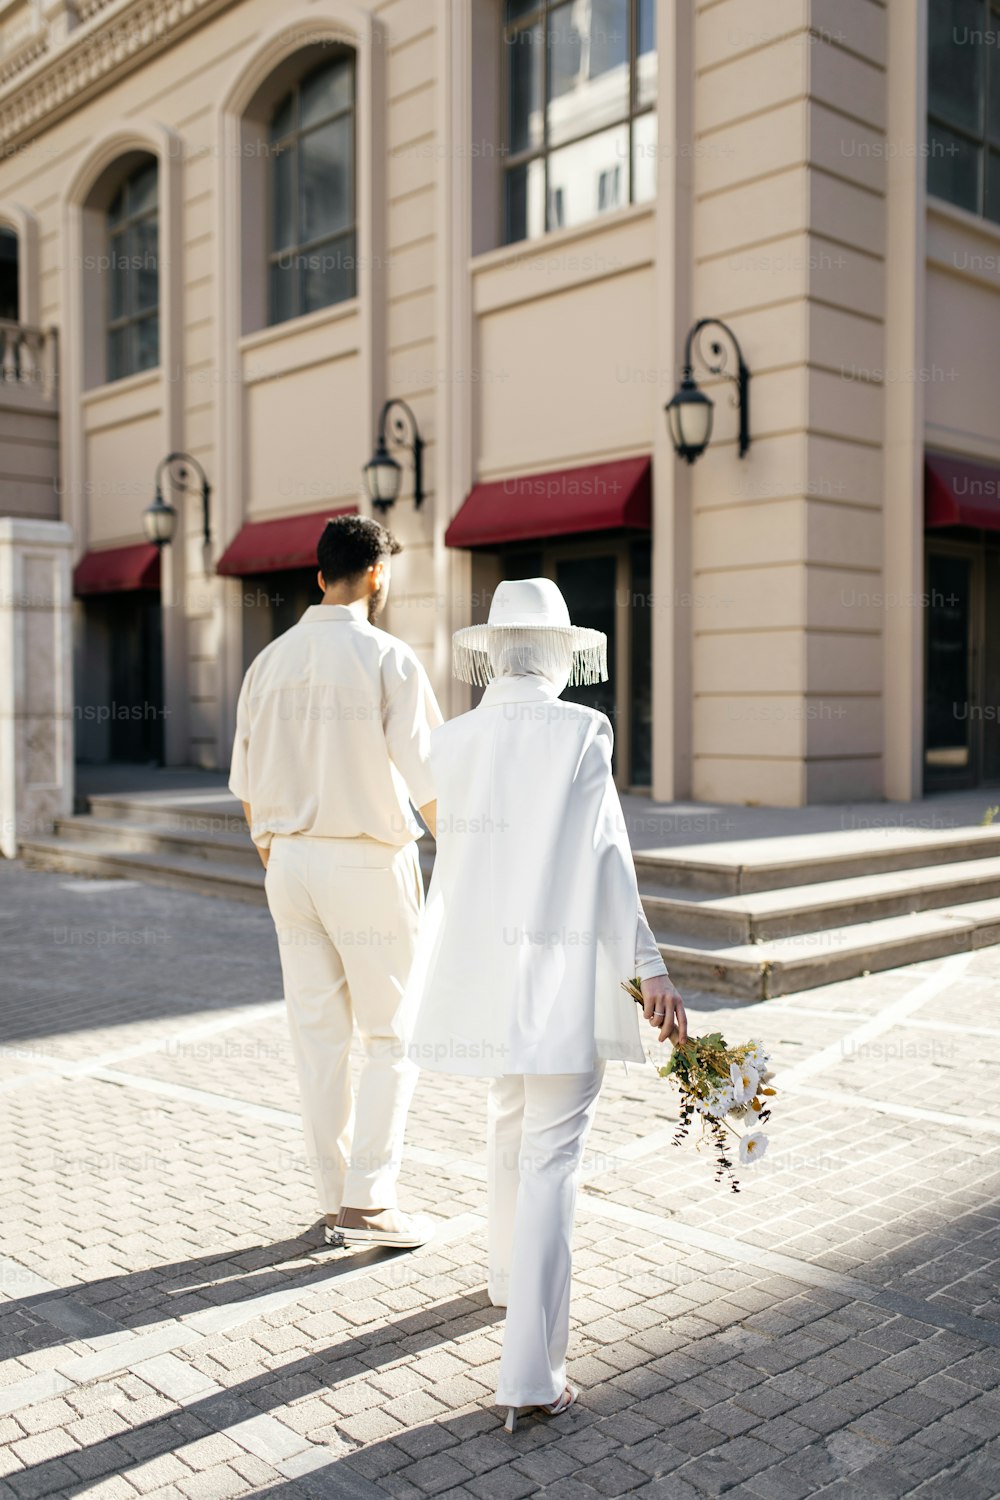 흰 옷을 입은 남자와 여자가 거리를 걷고 있다